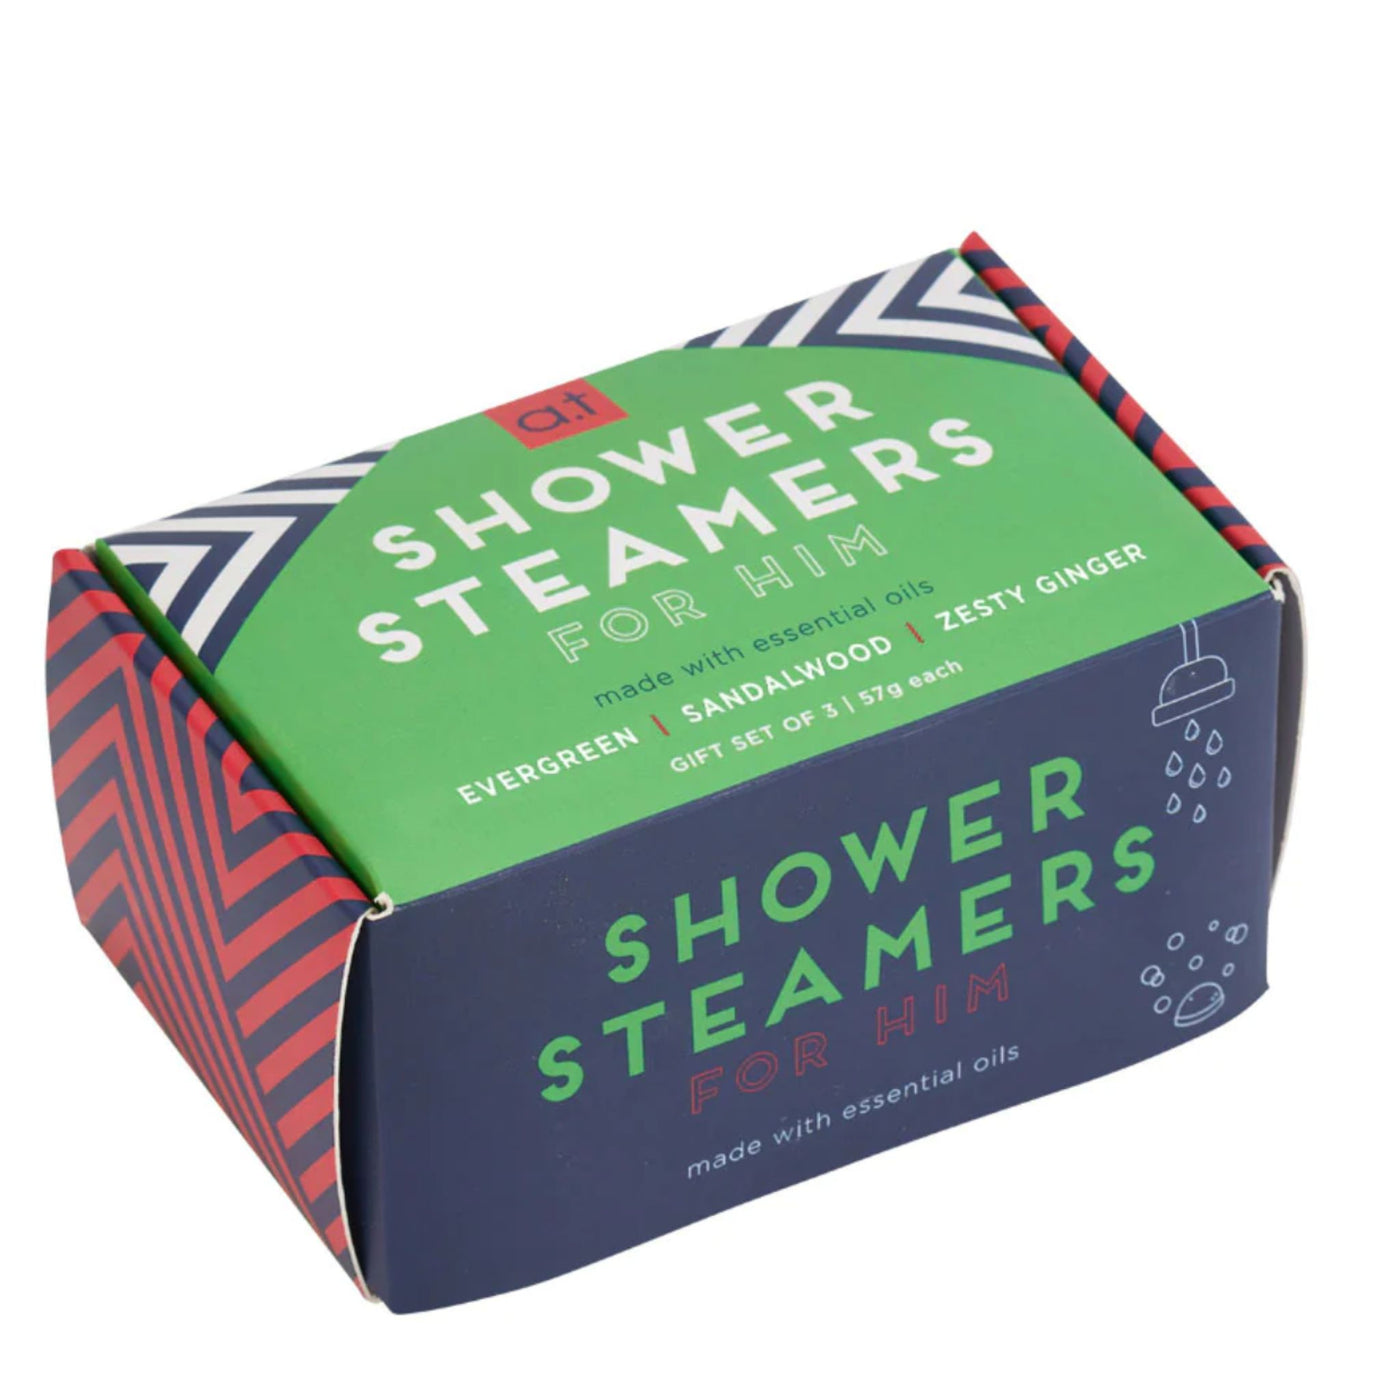 Shower Steamer Gift Box